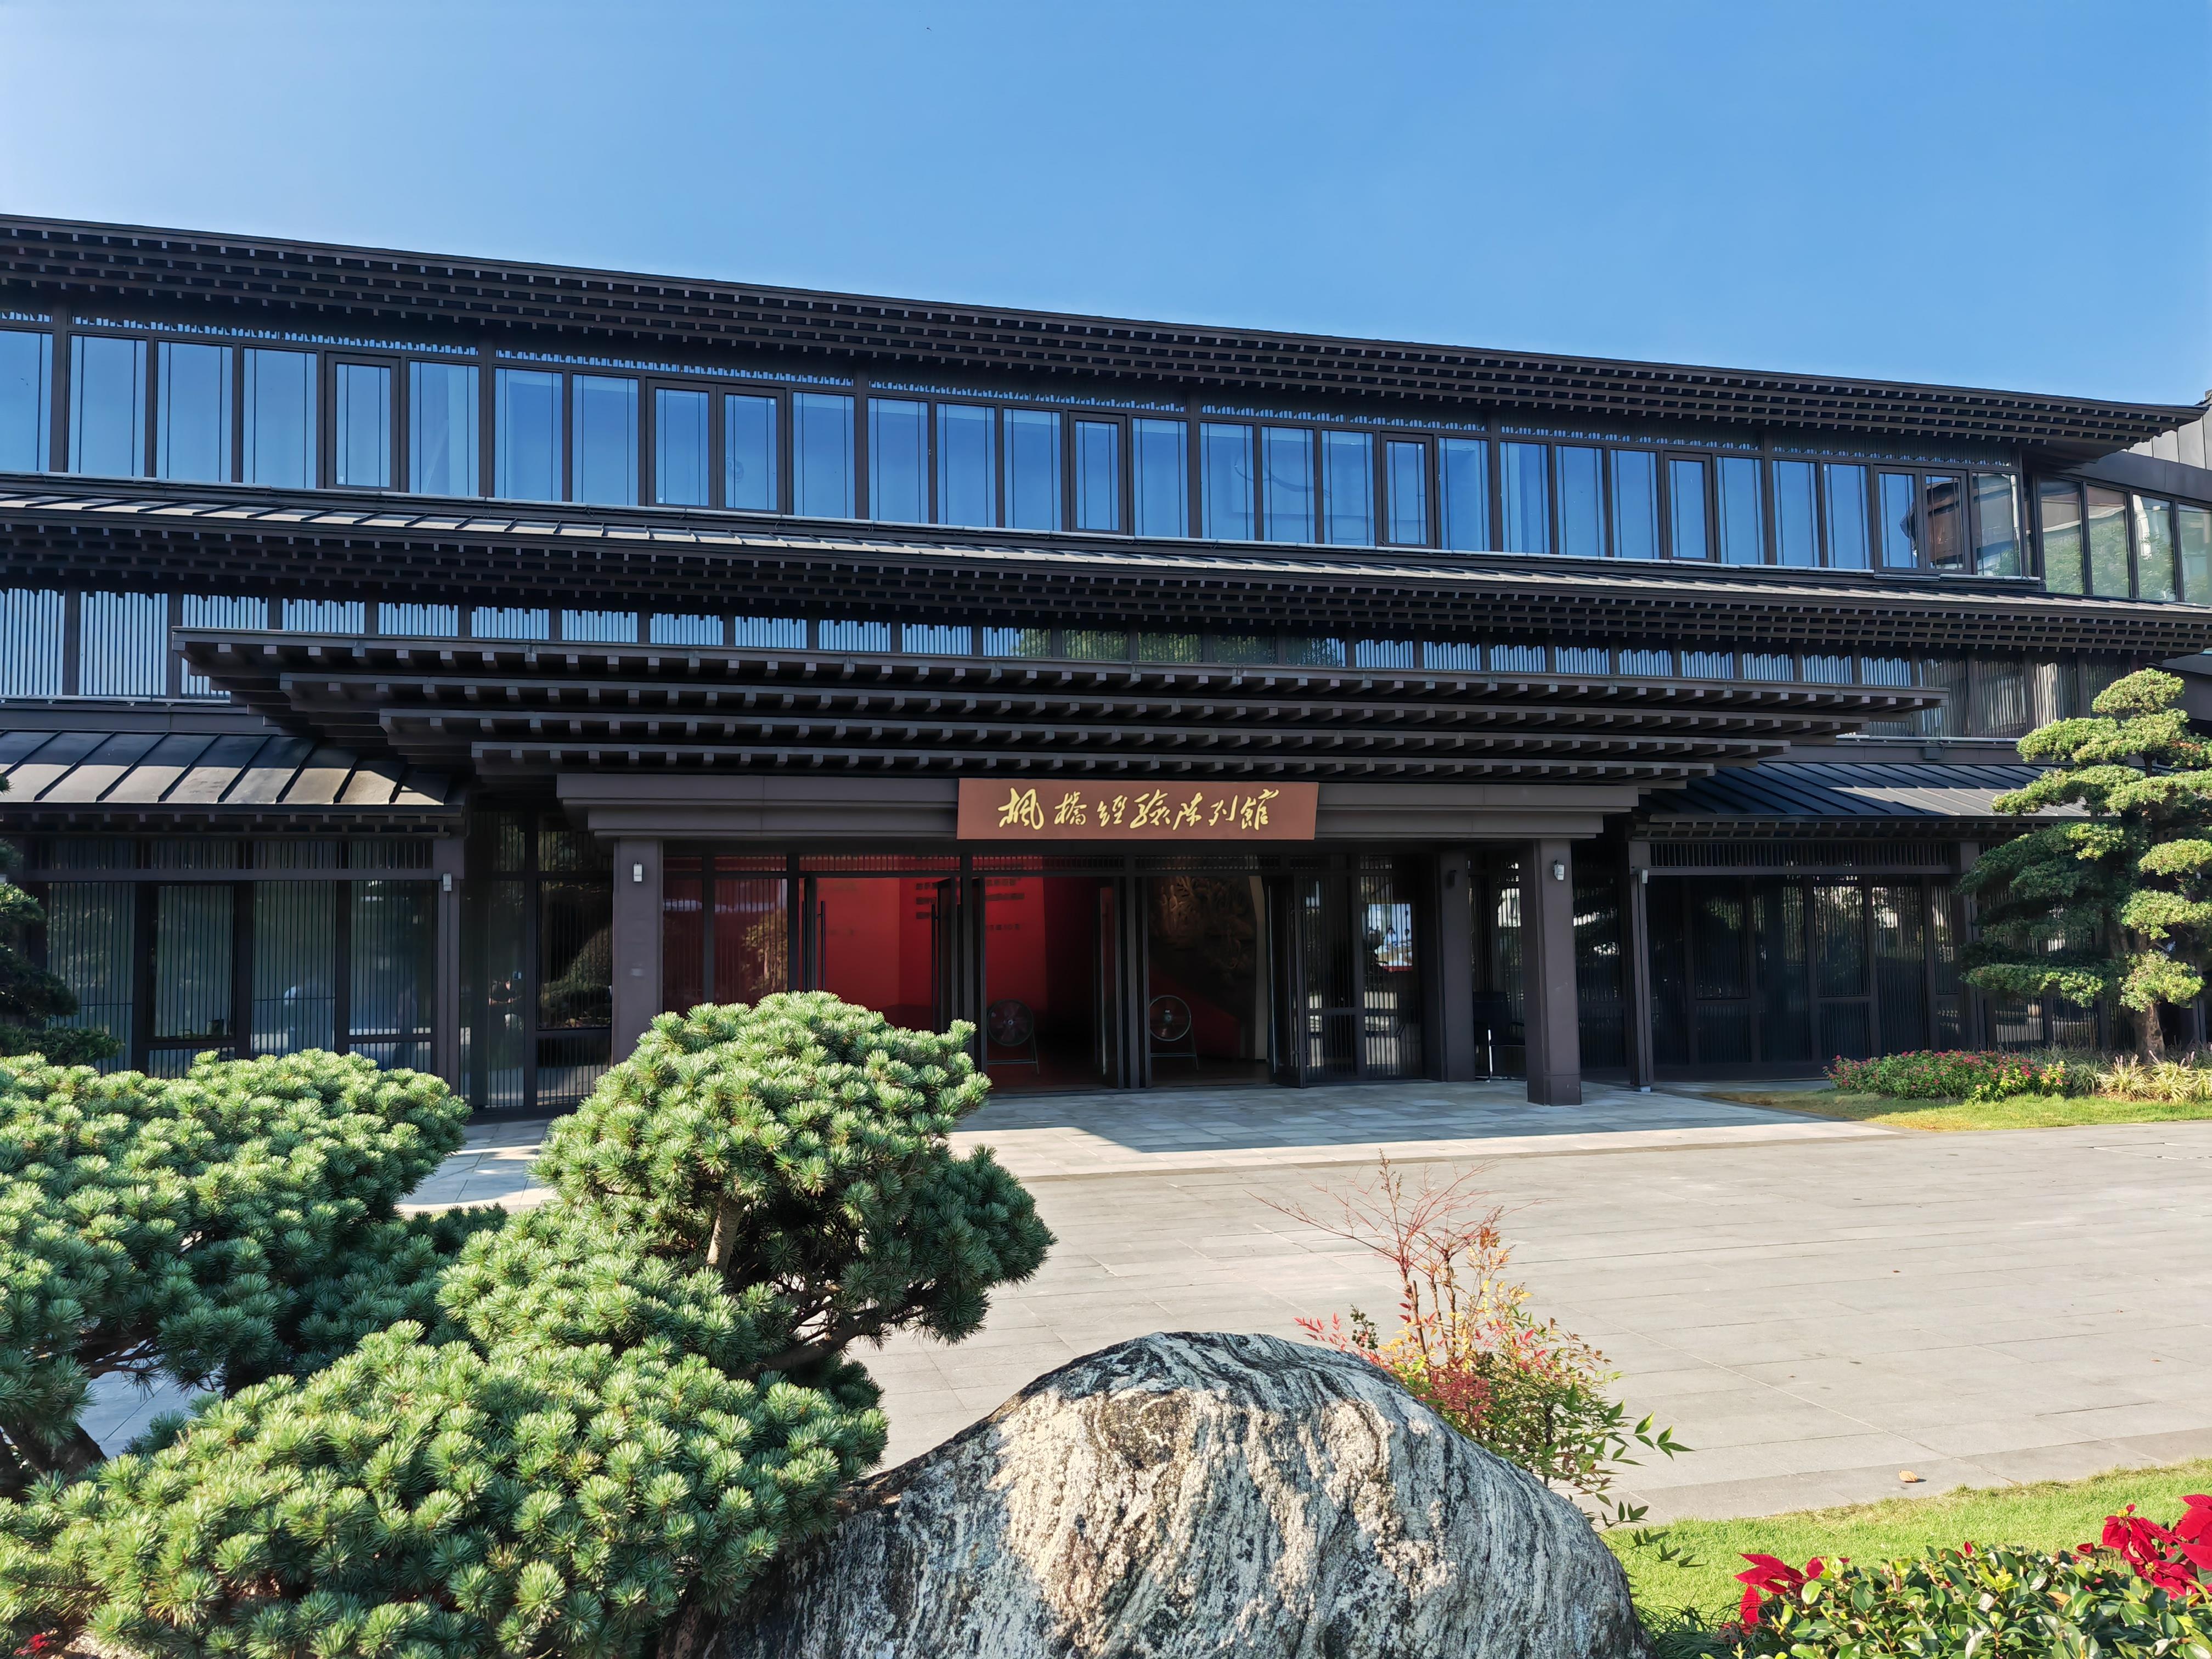   △枫桥经验陈列馆位于绍兴市诸暨市枫桥镇，于2018年10月建成启用，成为宣传推广“枫桥经验”的重要阵地。